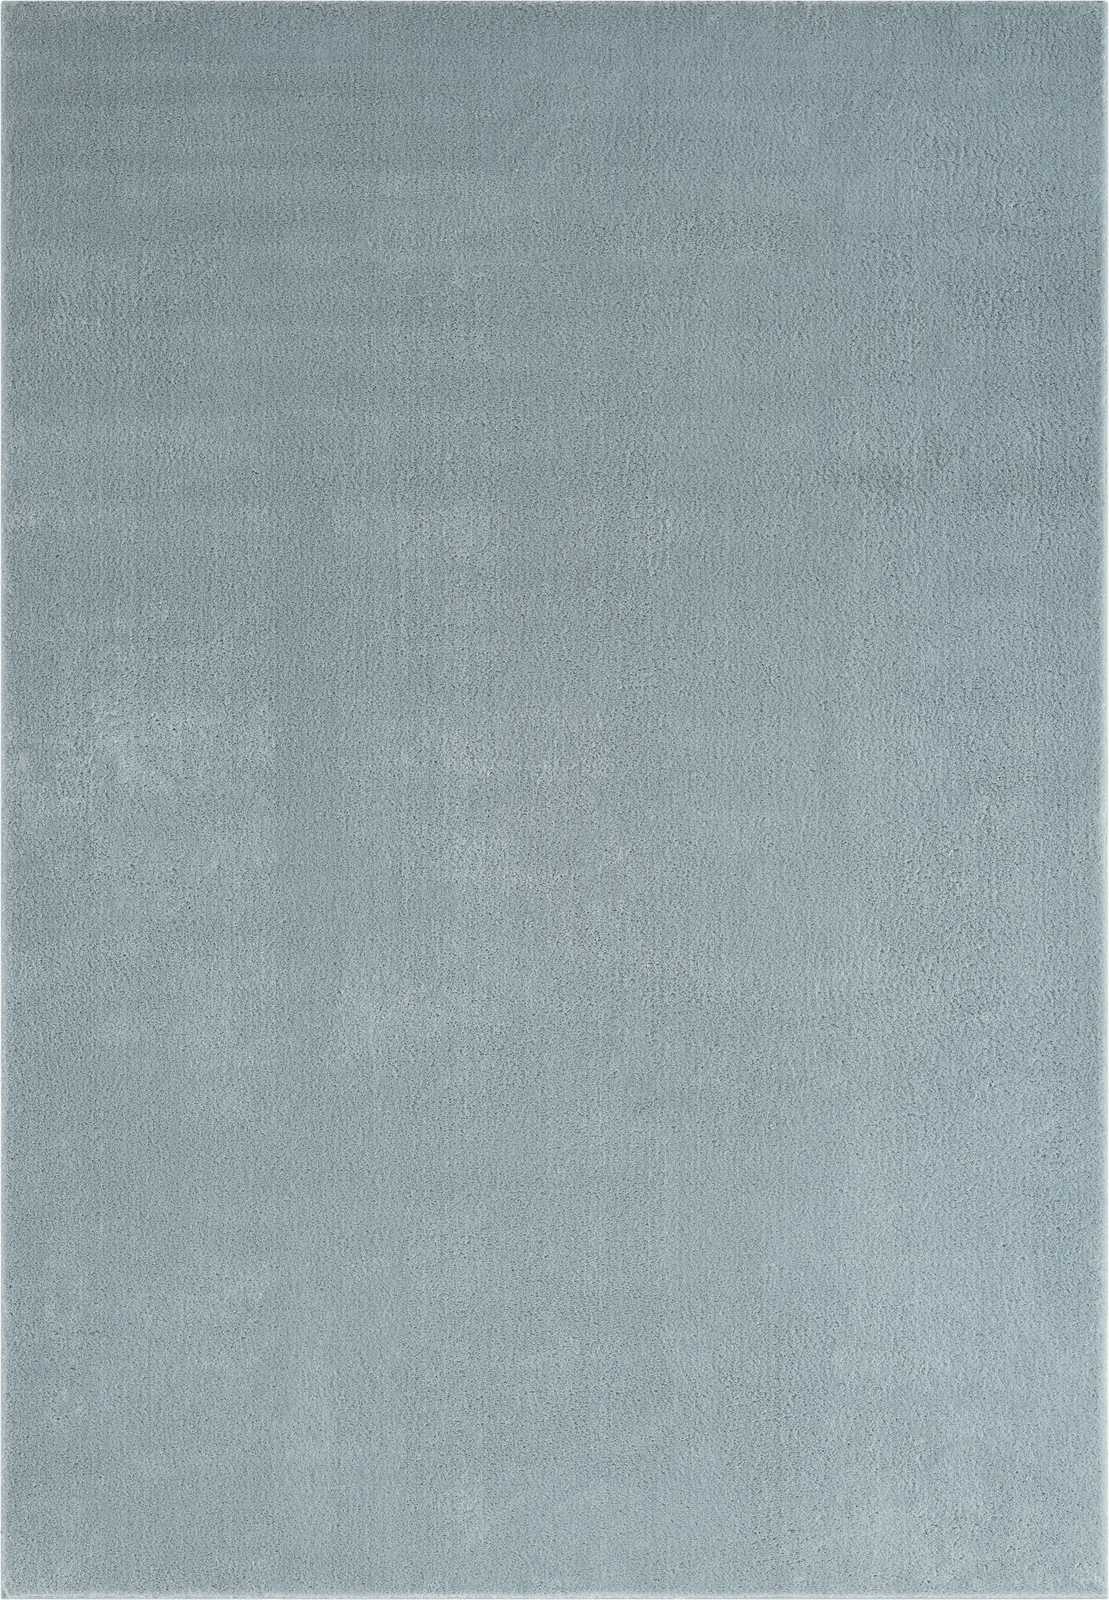             Pluizig hoogpolig tapijt in blauw - 110 x 60 cm
        